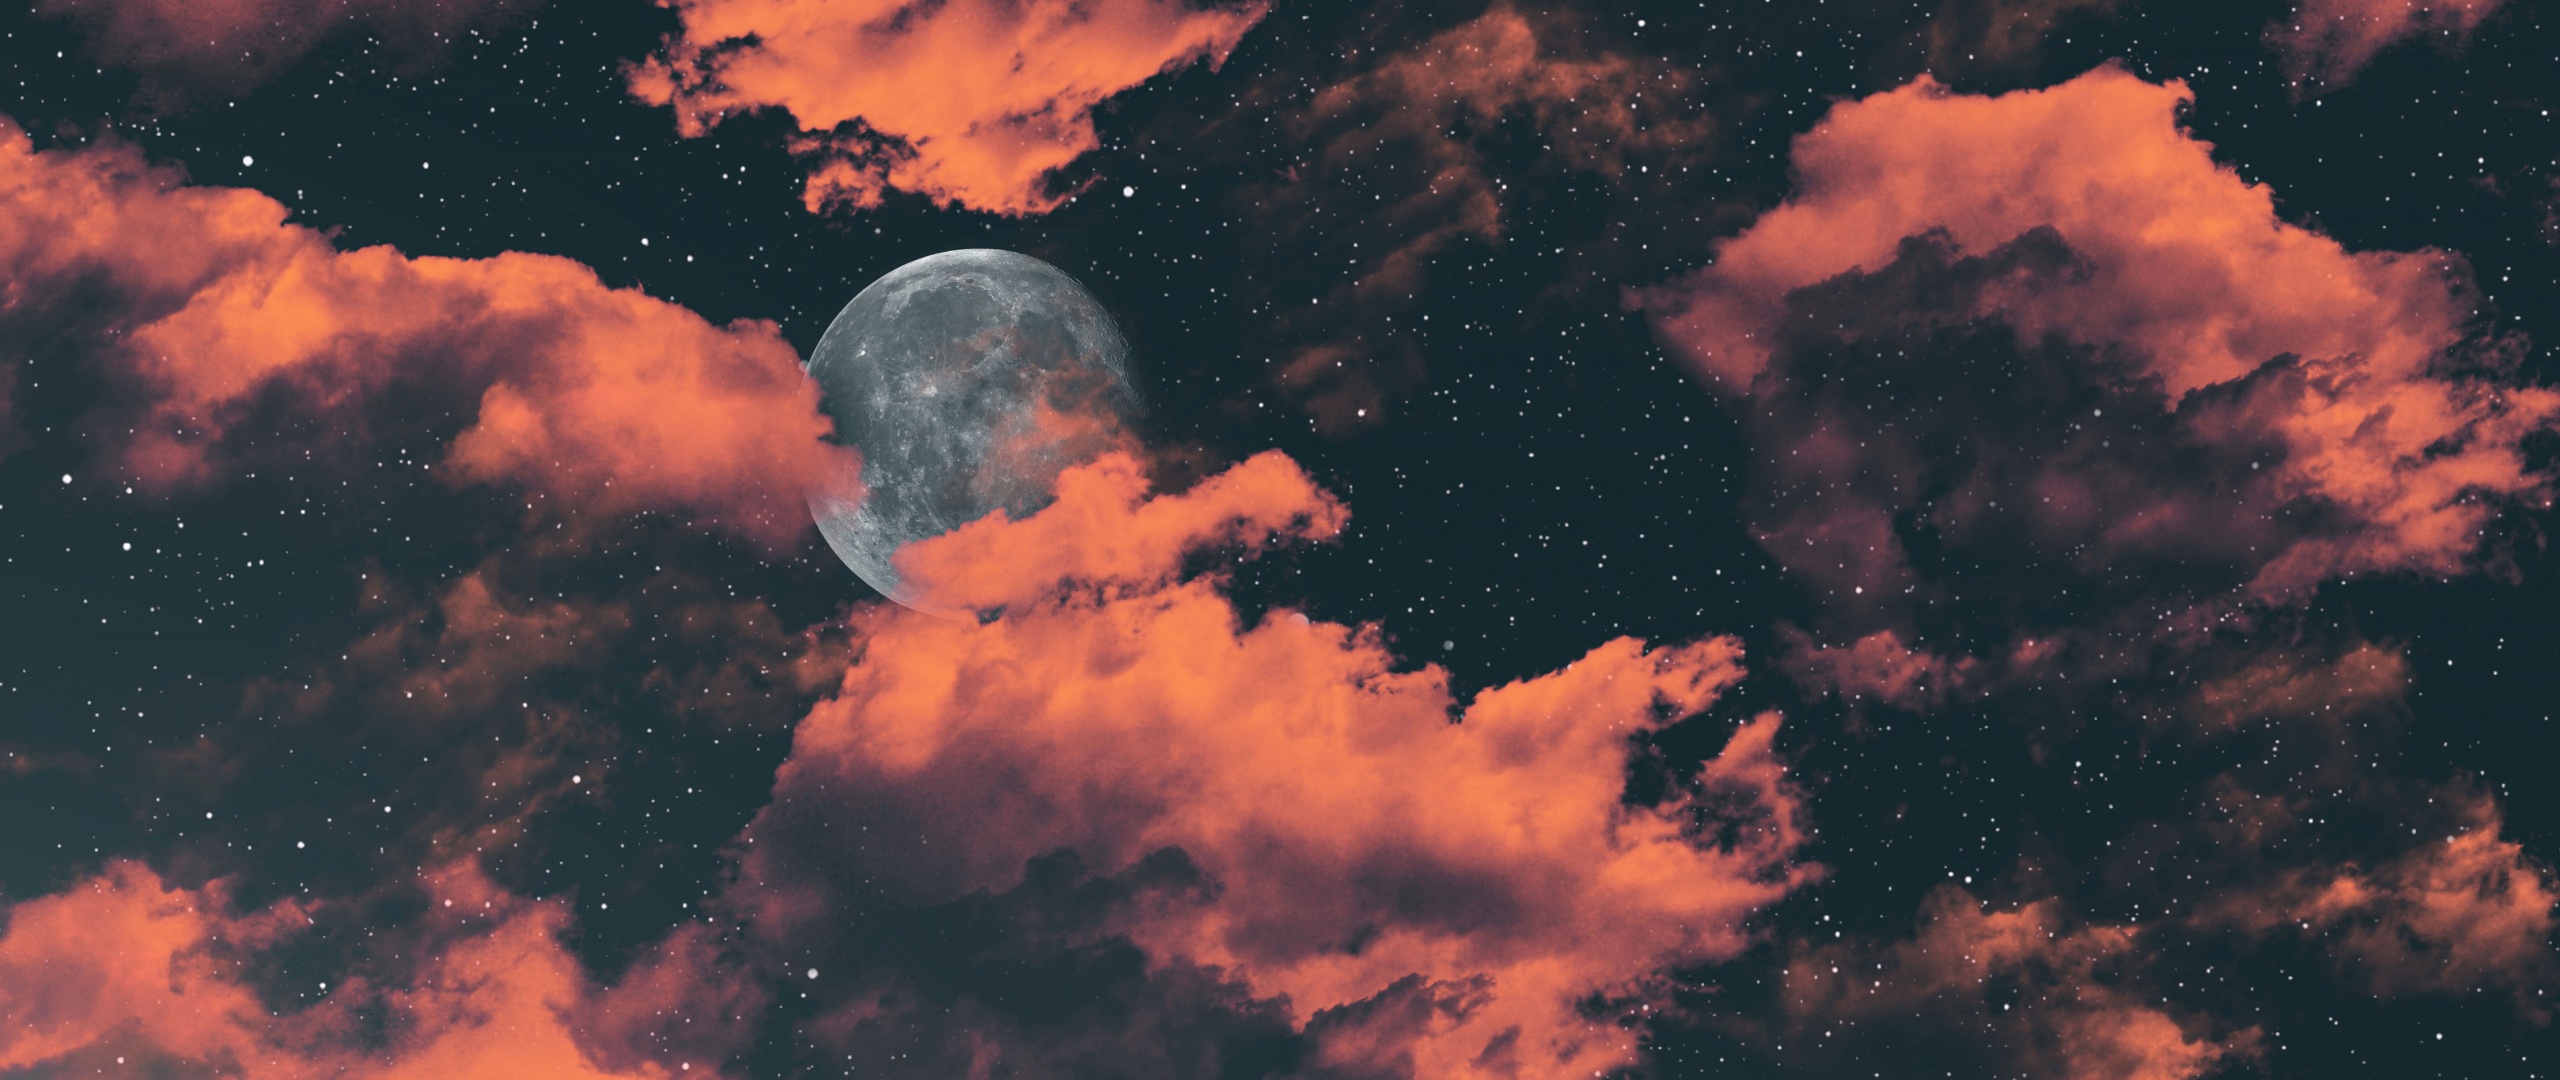 Full moon - Thưởng thức bức ảnh Full Moon đẹp nhất! Với các tông màu tối và hiệu ứng ánh sáng đầy màu sắc, bạn sẽ ngỡ như đang thiên thần giữa không gian thật sự. Tải về bức ảnh 4K này giúp bạn tha hồ khám phá sự lãng mạn và huyền bí của bầu trăng đầy quyến rũ!